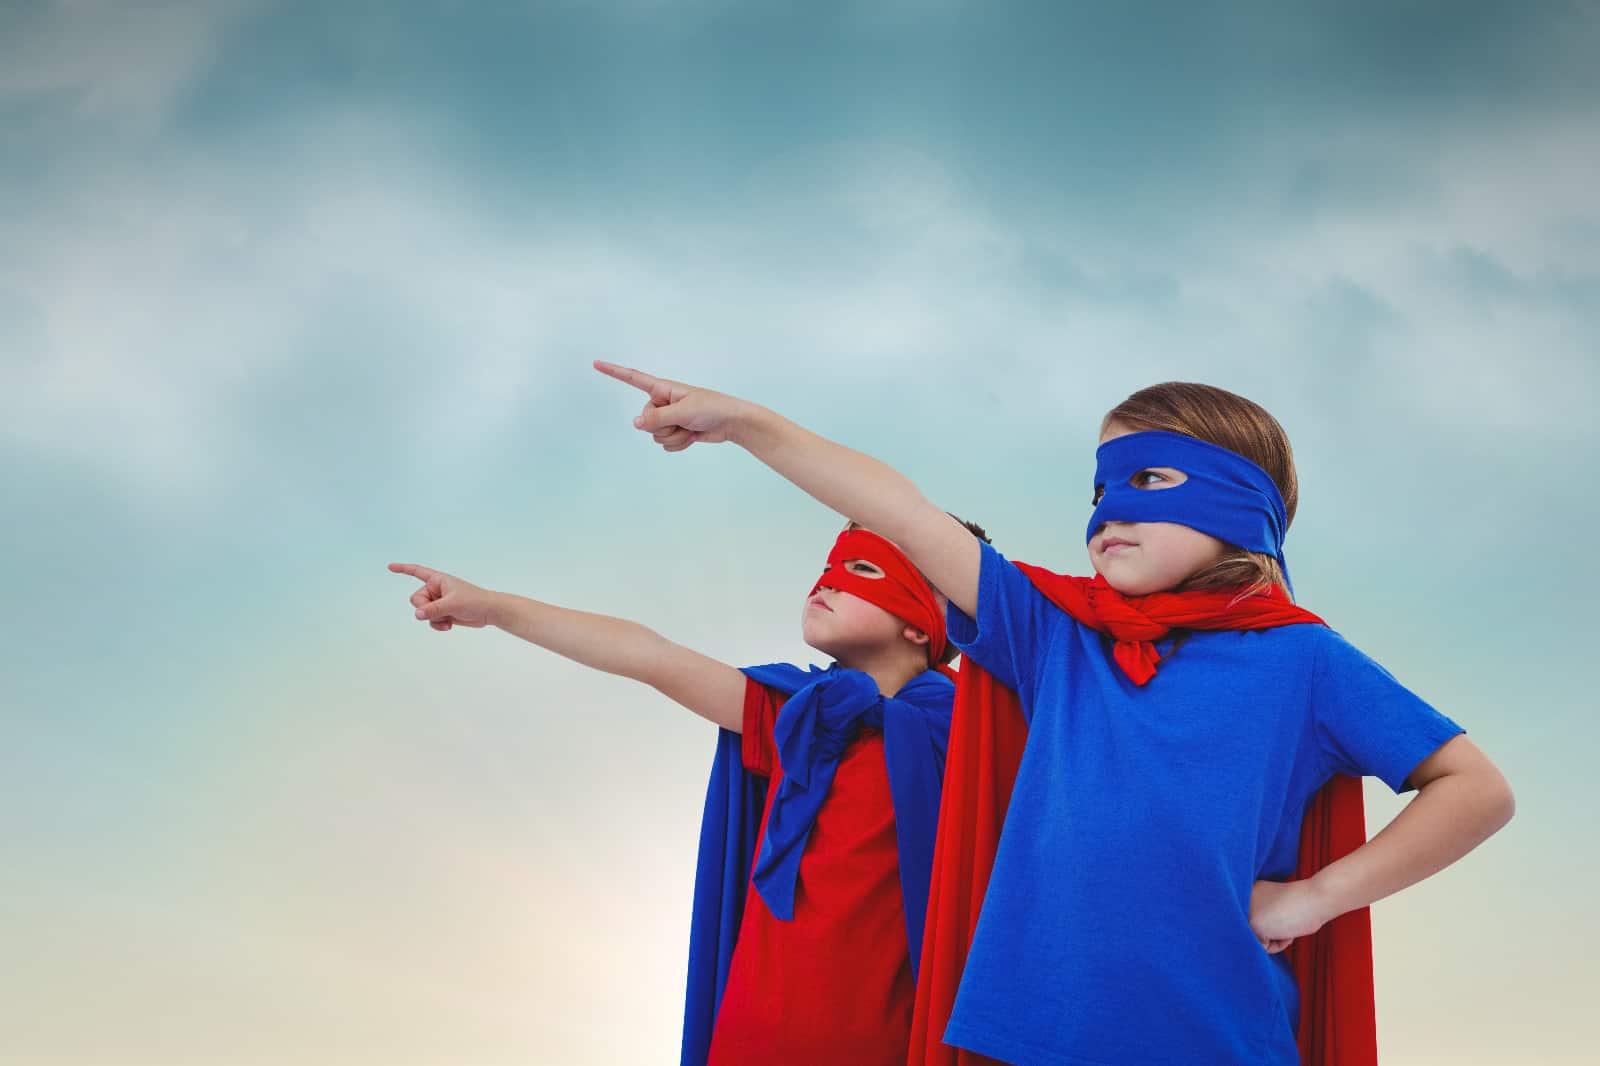 Kuvassa kaksi nuorta ihmistä pukeutuneena supersankareiksi osoittavat ylöspäin.